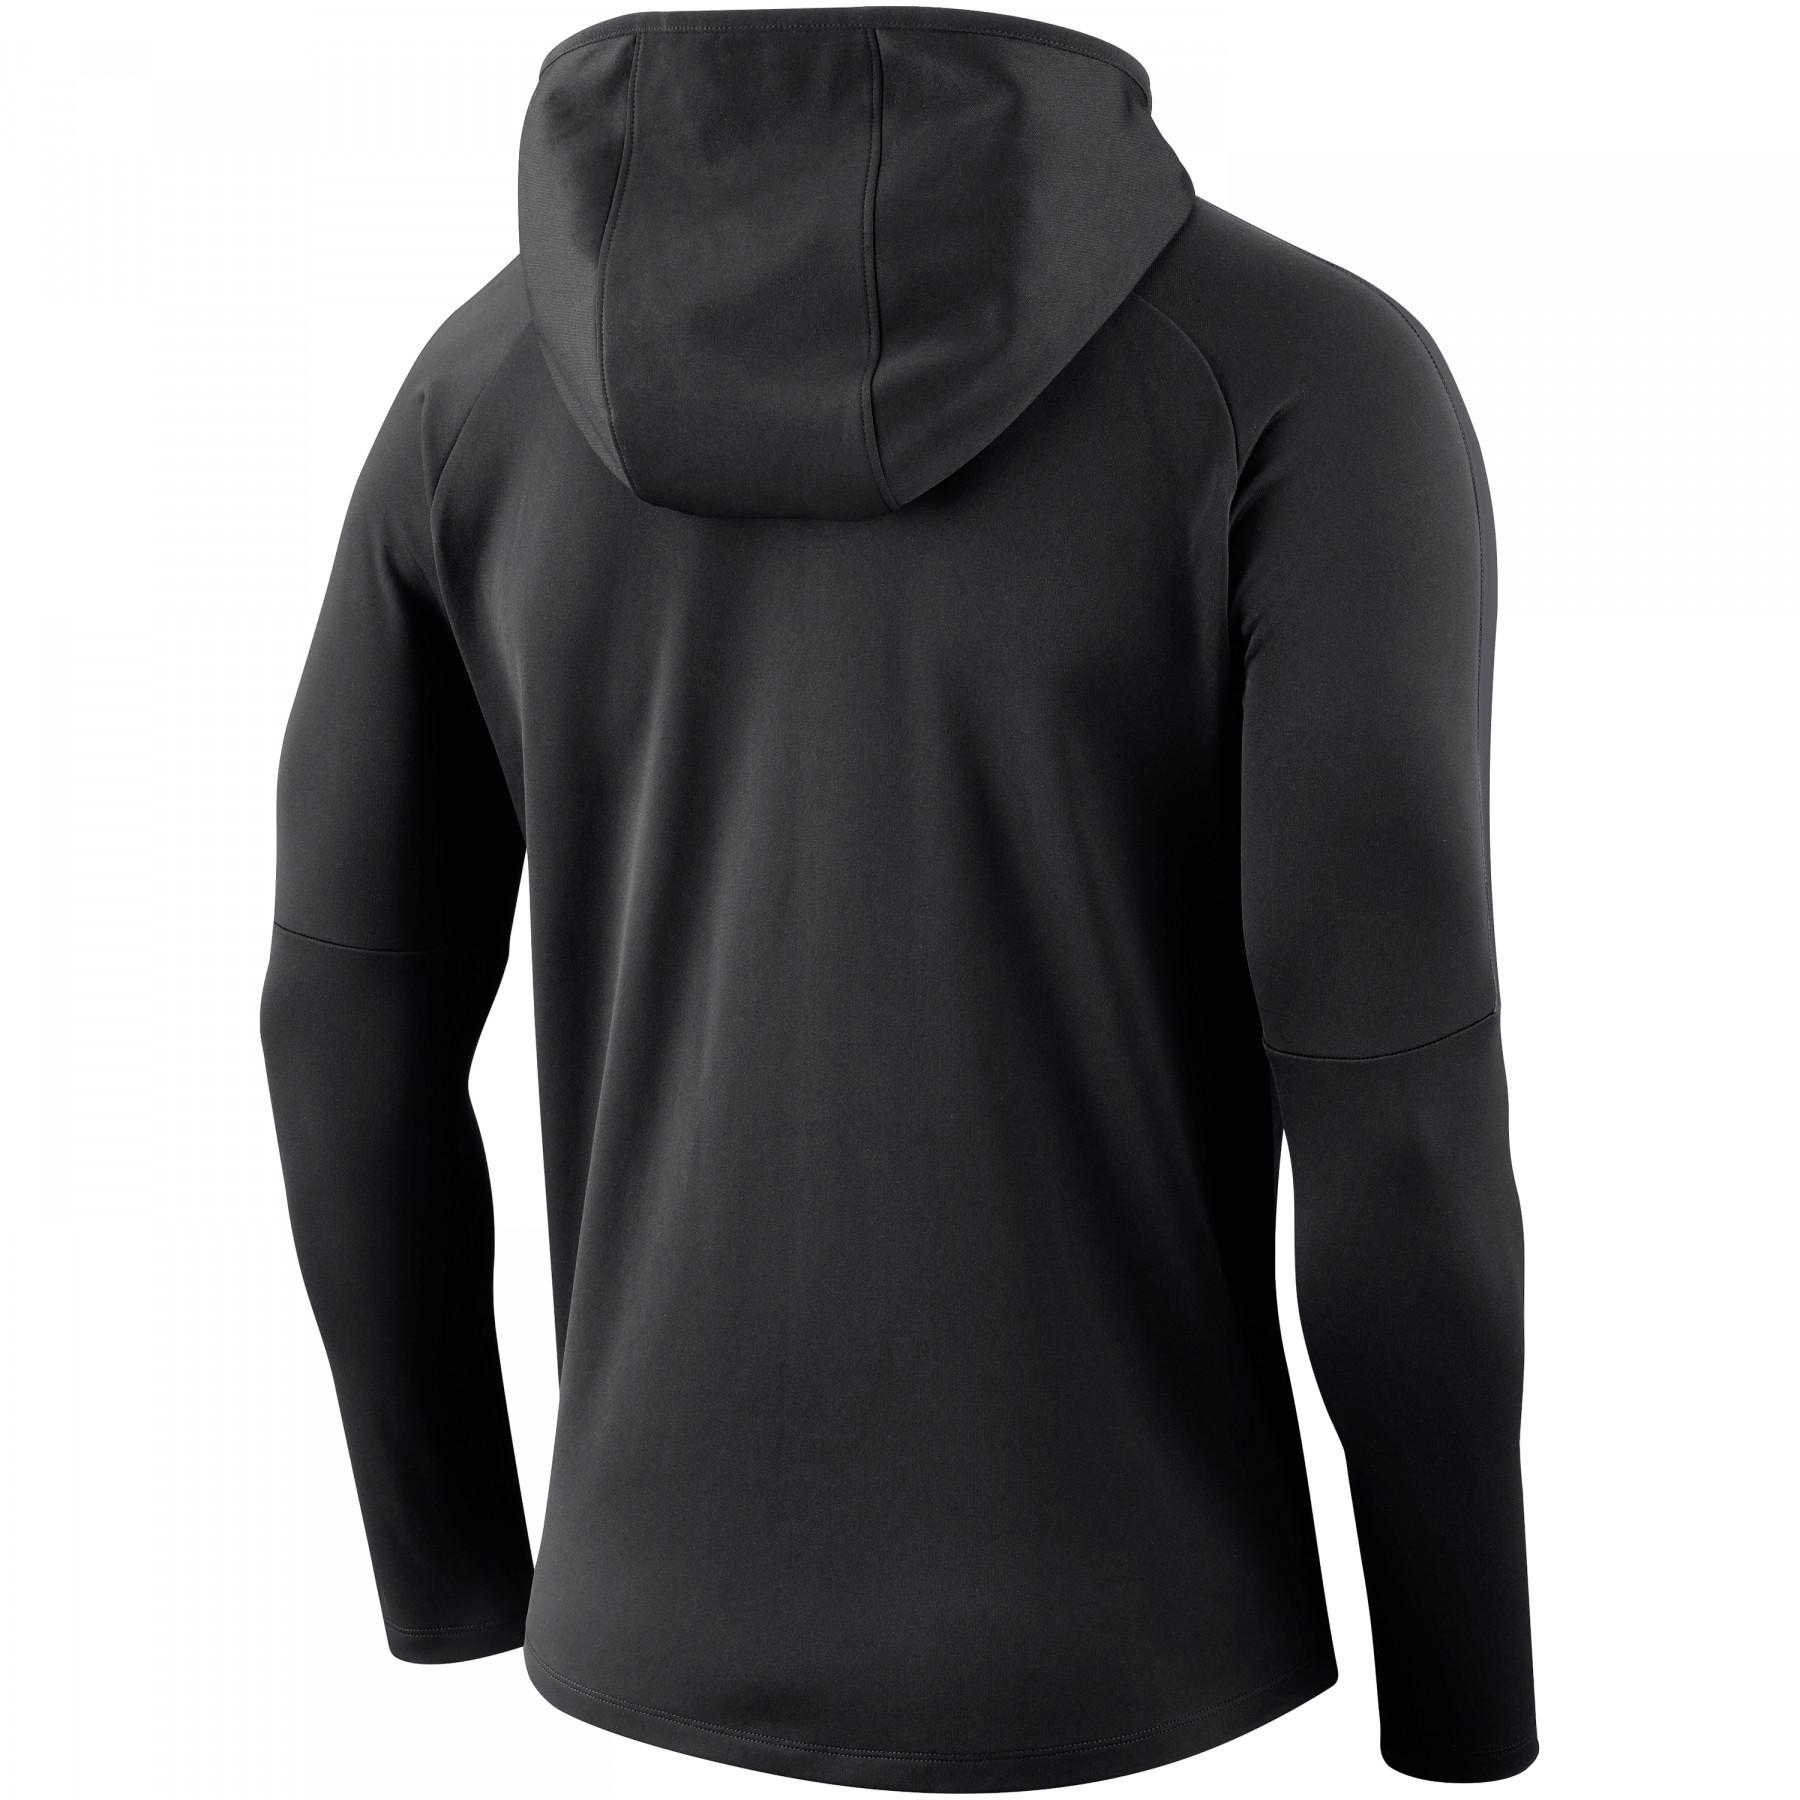 Hooded sweatshirt Nike Dry Academy 18